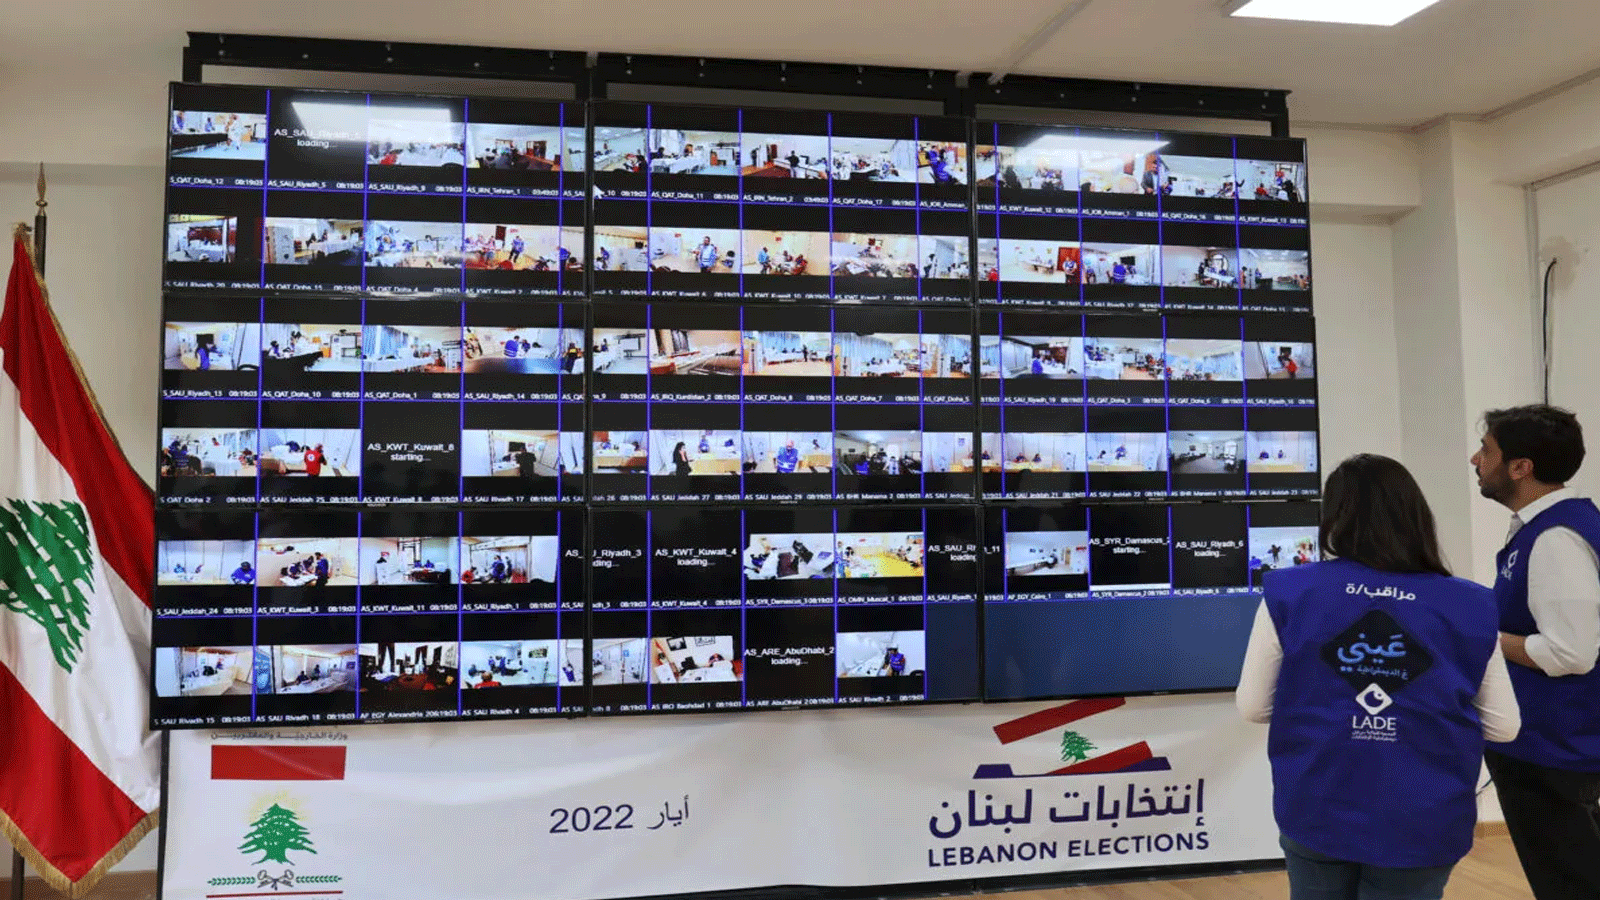 أعضاء جمعية مراقبة الانتخابات اللبنانية يستطلعون عملية التصويت من خلال شاشات داخل وزارة الخارجية في بيروت. في 6 مايو / أيار 2022